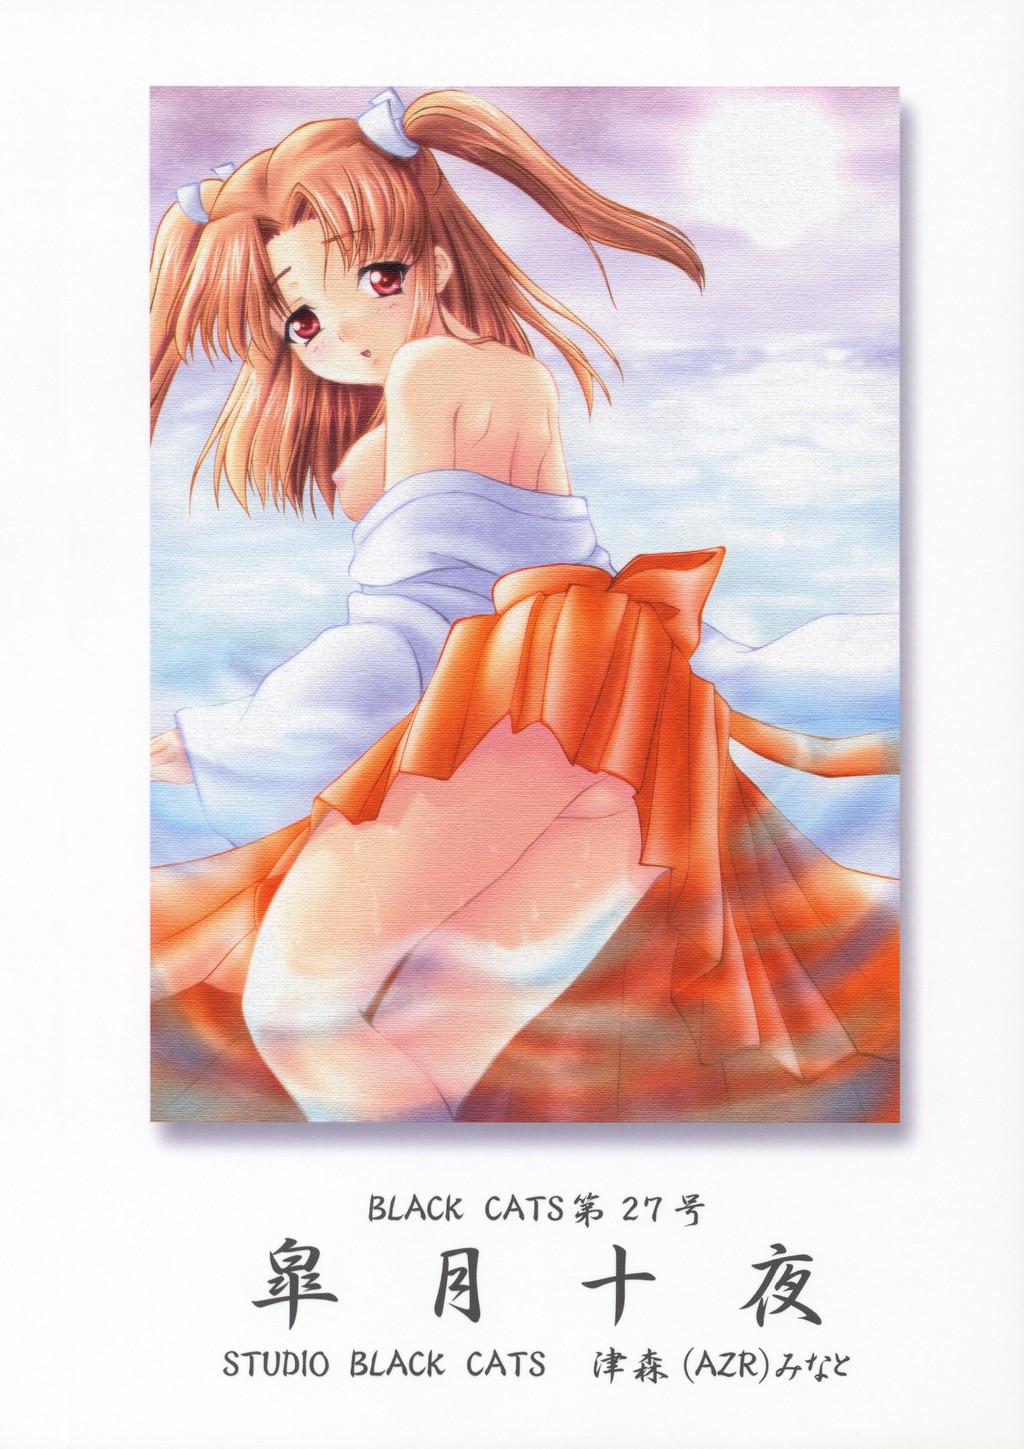 (Cレヴォ33) [STUDIO BLACK CATS (津森(AZR)みなと)] BLACK CATS第27号 皐月十夜 (月姫)